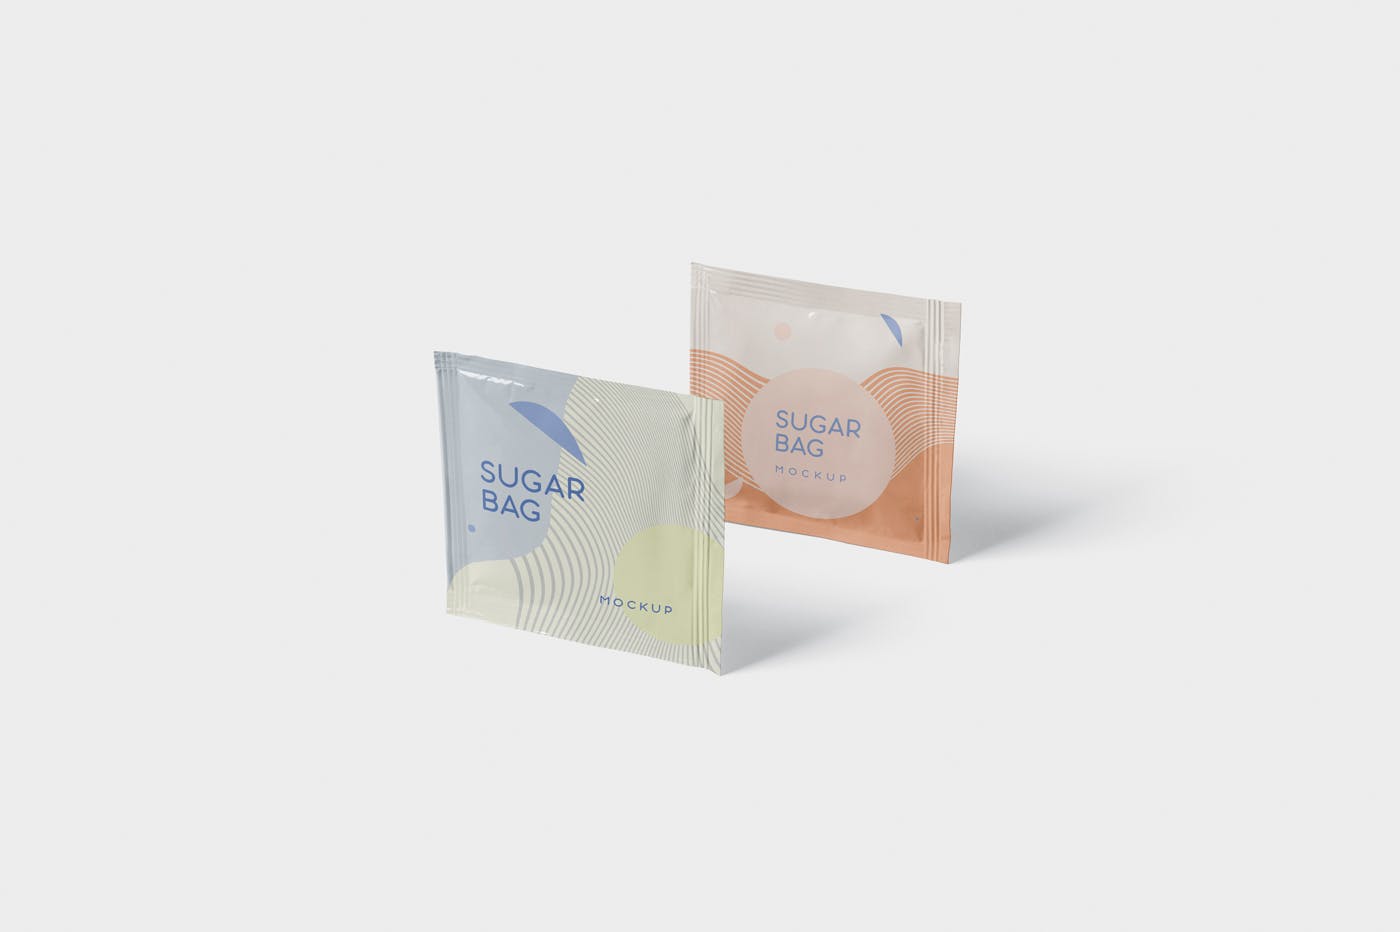 盐袋糖袋包装设计效果图素材中国精选 Salt OR Sugar Bag Mockup – Square Shaped插图(3)